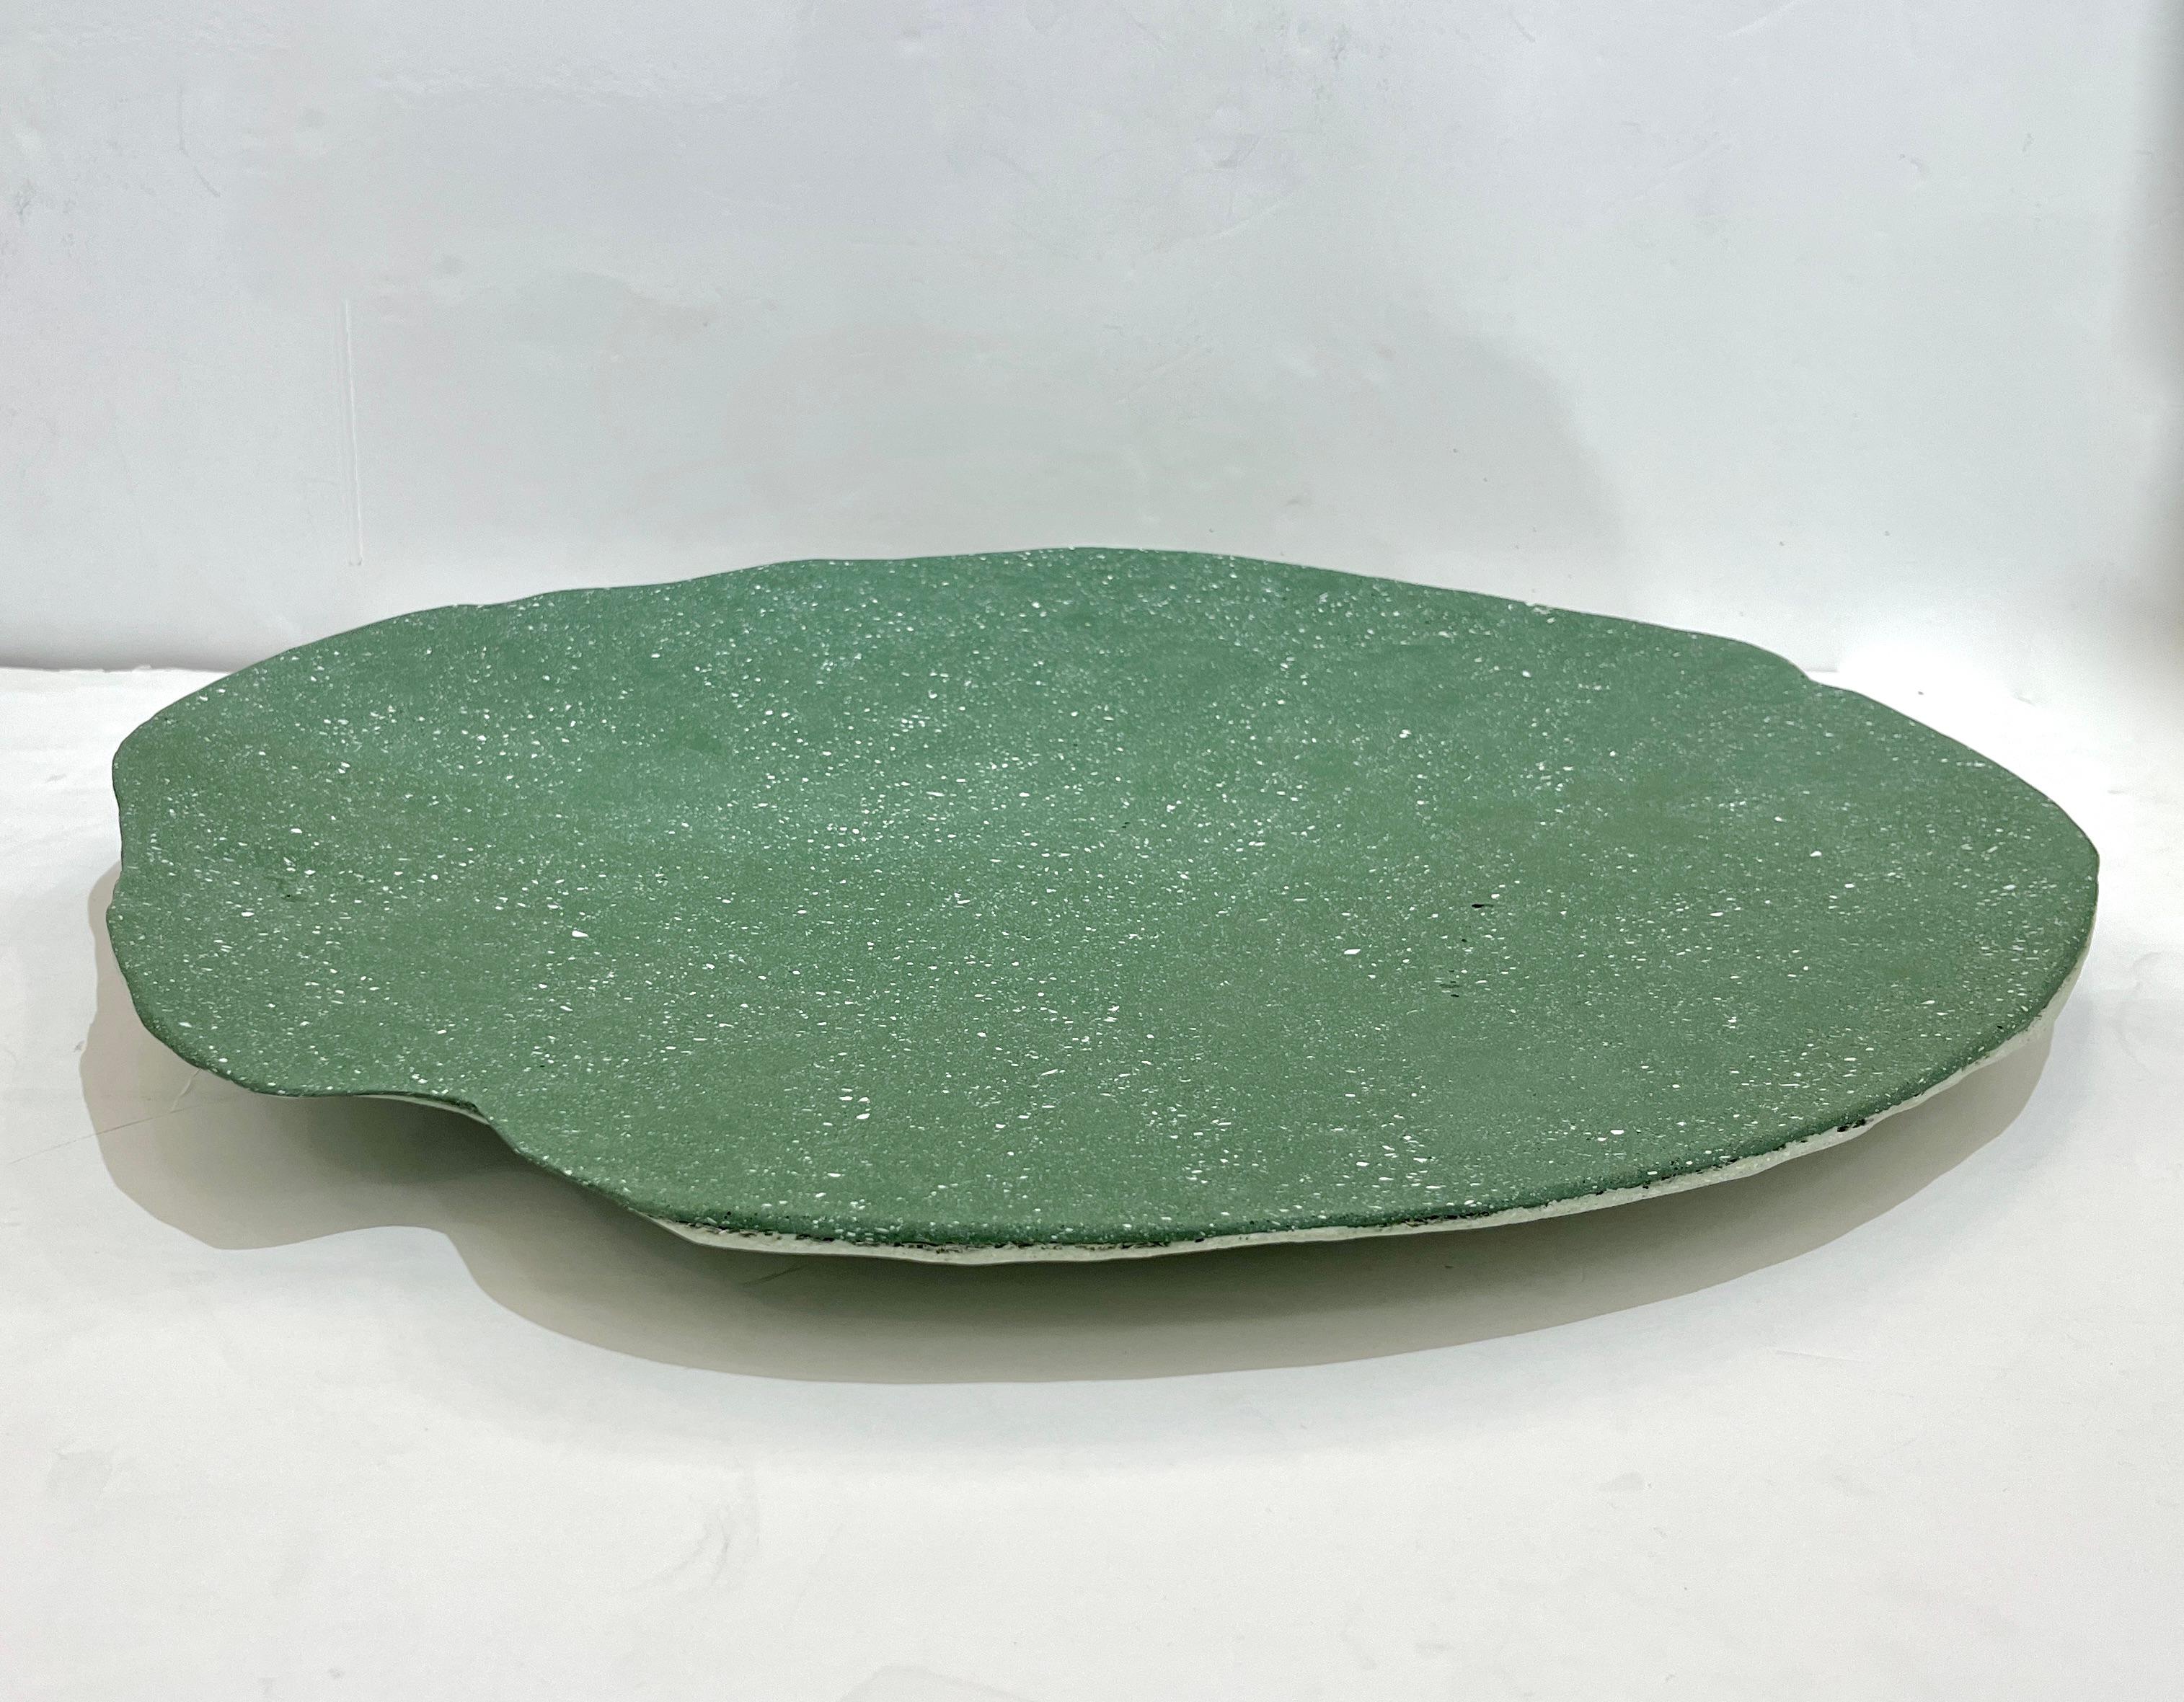 Dieser organische, amorphe Tafelaufsatz in üppigem Grün mit weißer Farbe ist ein Kunstwerk des italienischen Künstlers und Designers GioMinelli. Das neue MATERIAL, das der Künstler unter Verwendung von recyceltem Glasfasergewebe und Harz unter